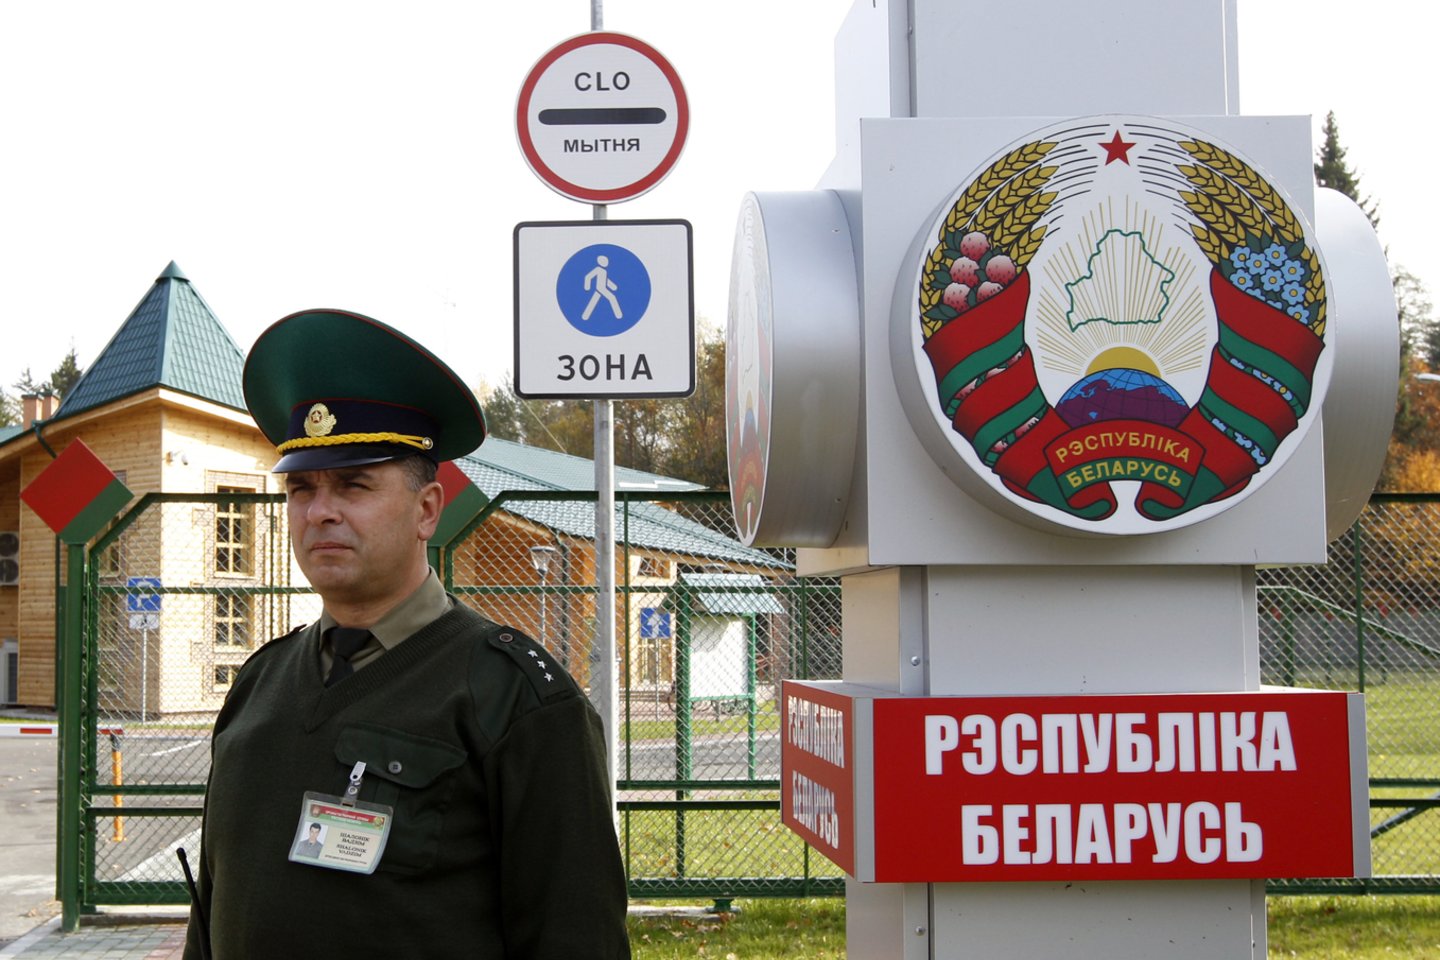  Baltarusijos pasieniečiai pradėjo taktines pratybas prie sienų su ES.  <br> Reuters/Scanpix nuotr.